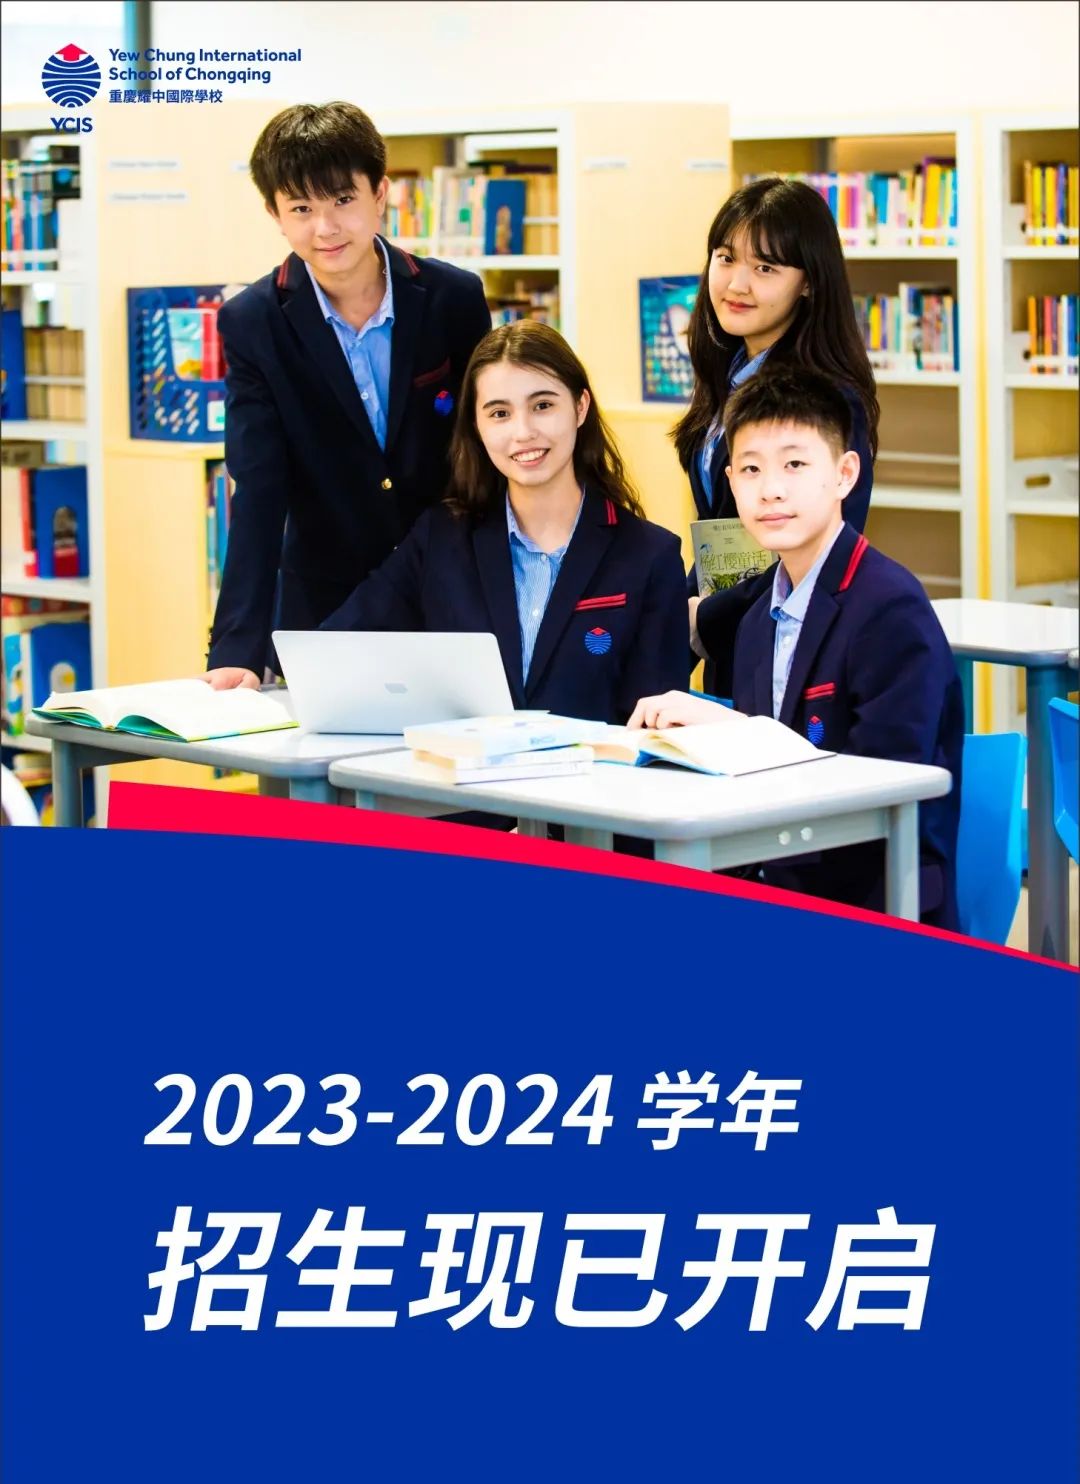 重庆耀中国际学校2023-2024学年招生已开启！